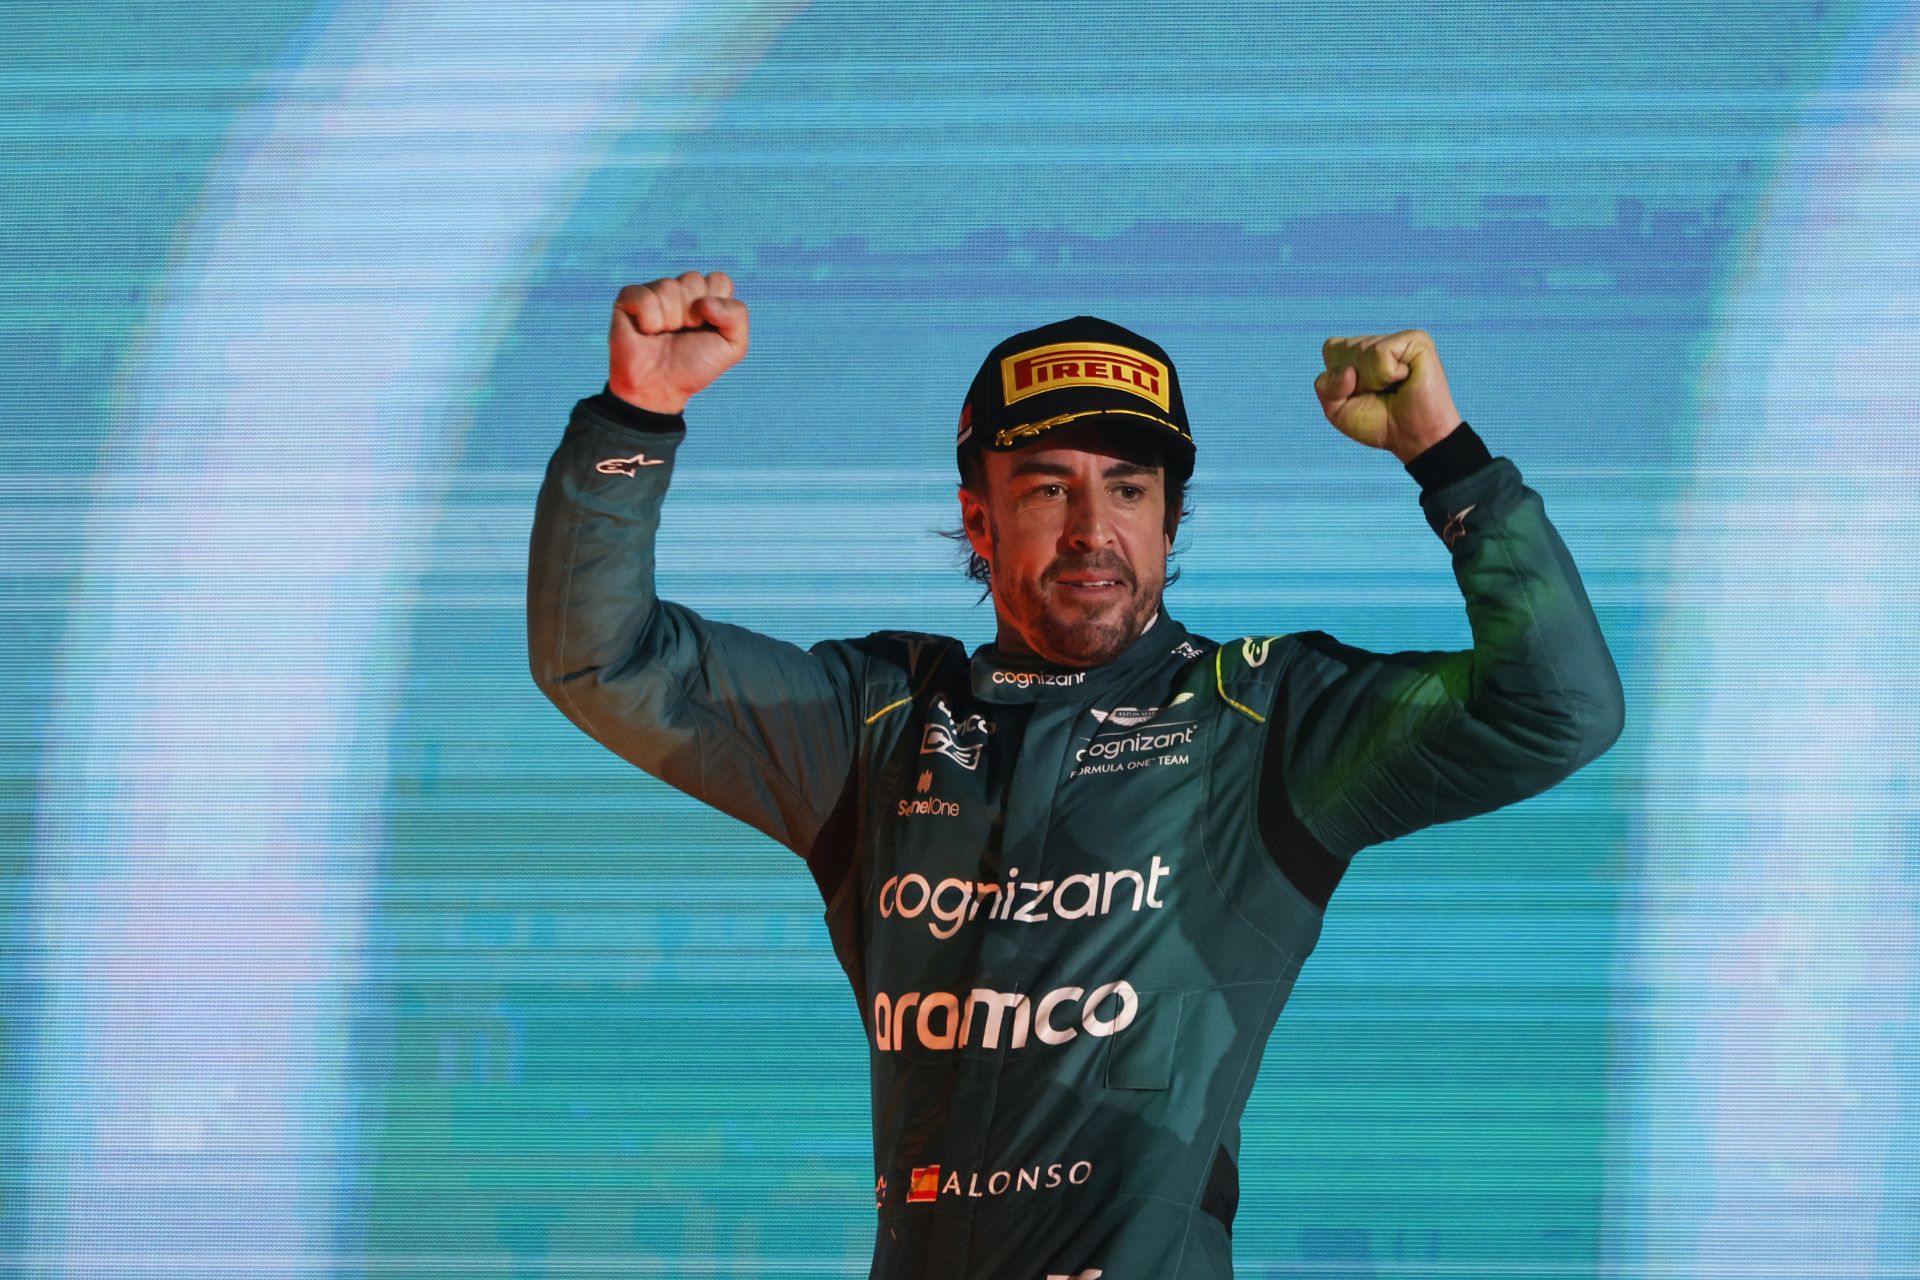 F. Alonso: L. Hamiltonas sensta ir jo atmintis prastėja